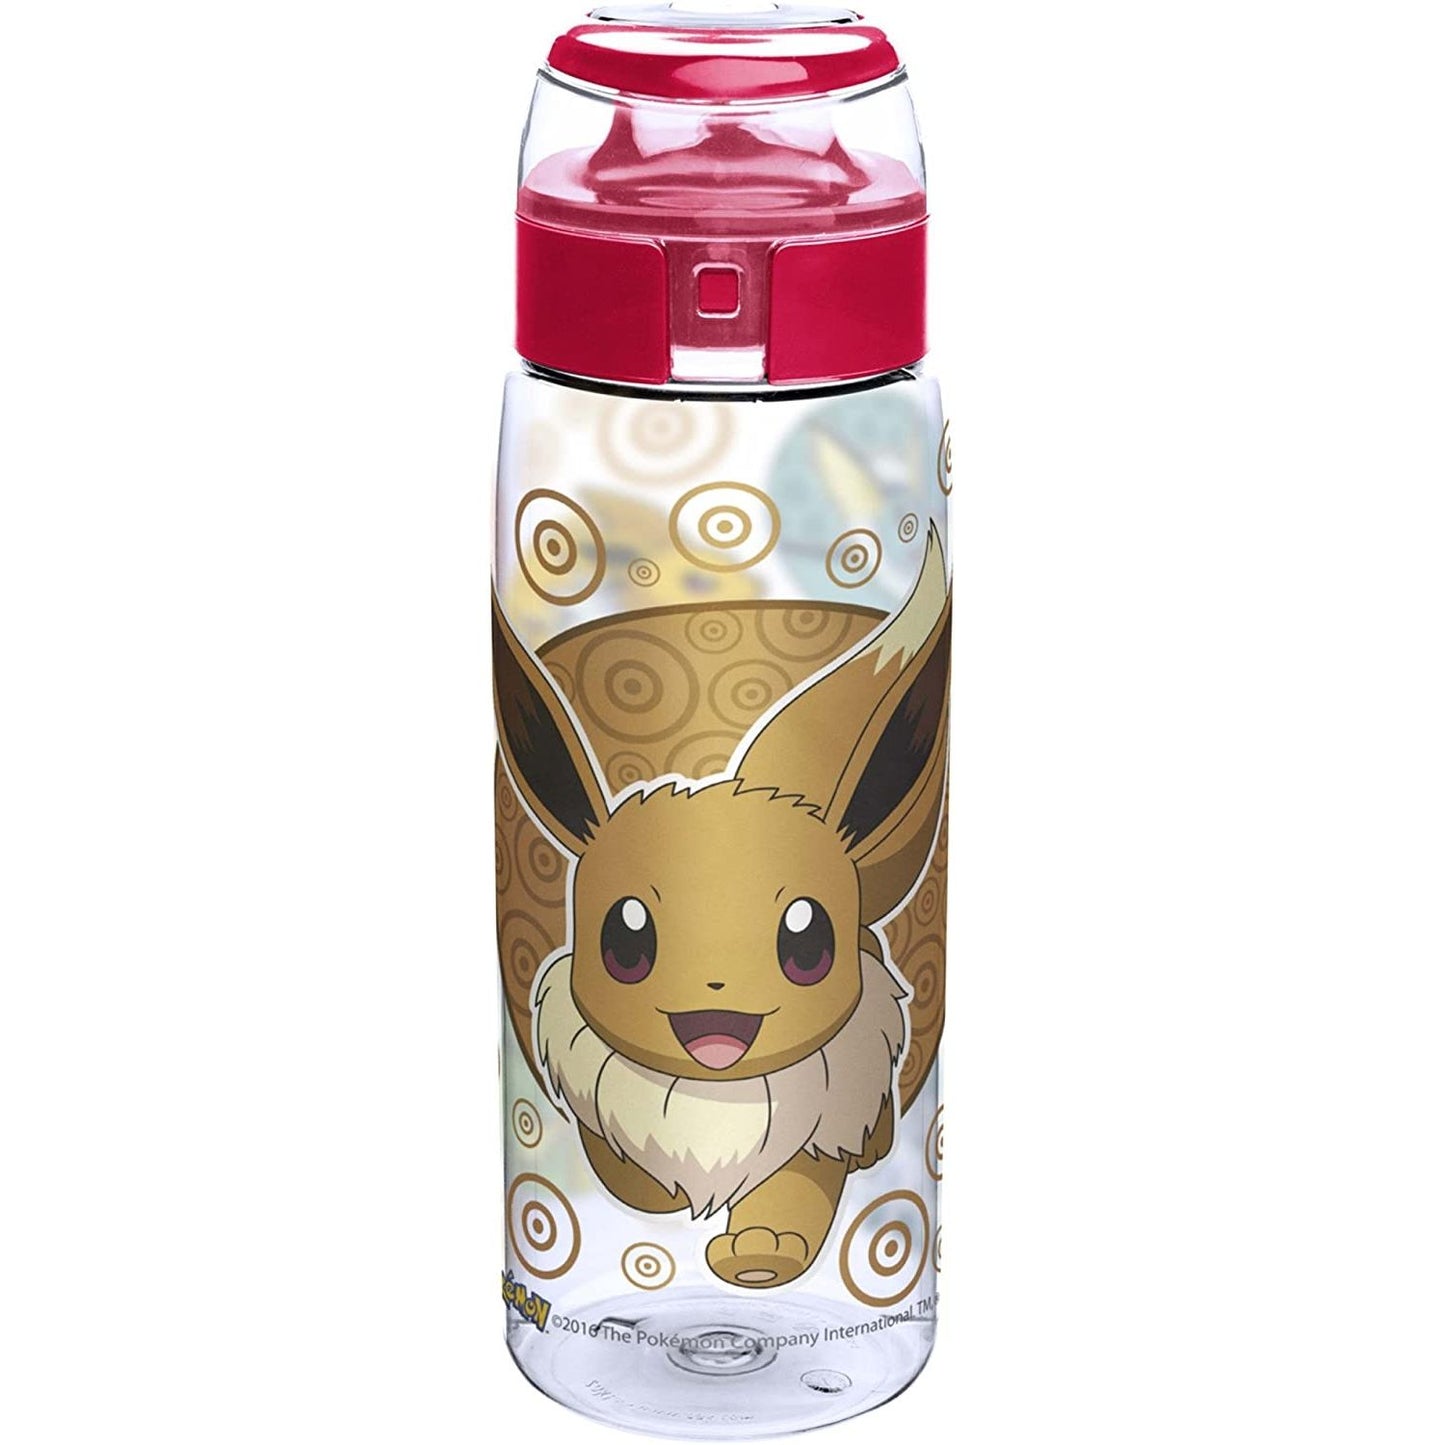 Water/Drinks/Hydration Bottle - Pokemon - EEVEE